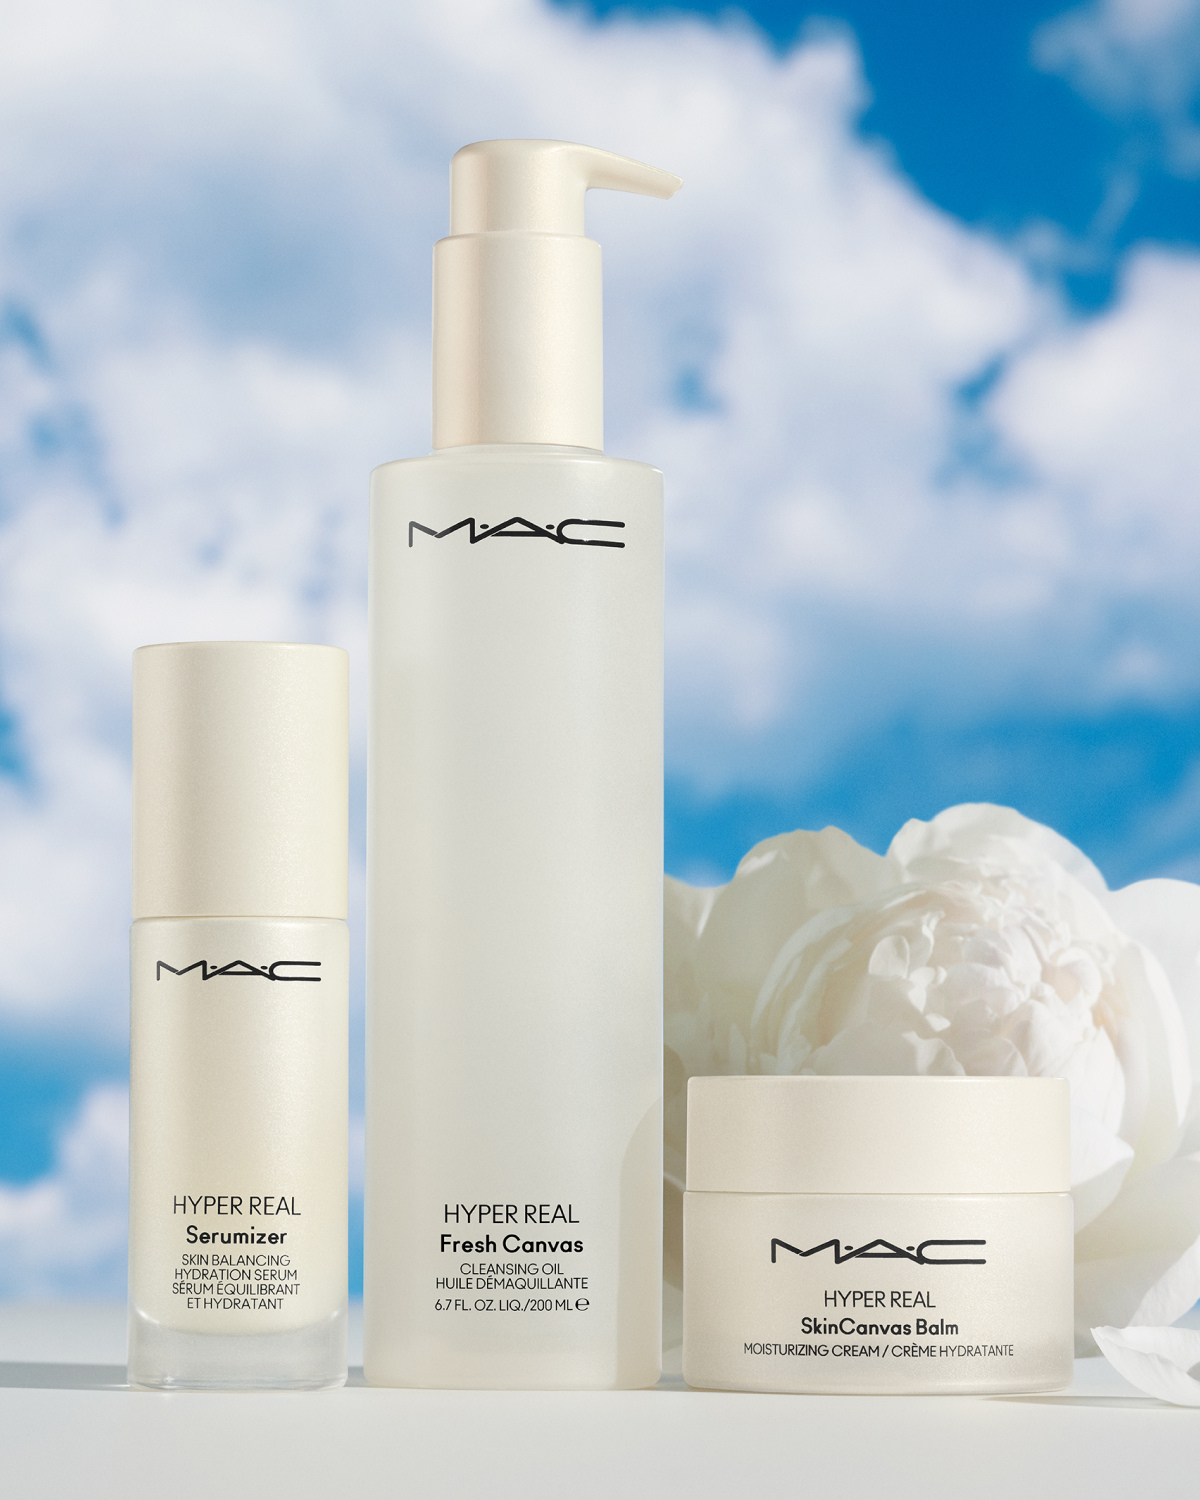 HYPER REAL: La nueva línea de tratamiento de MAC Cosmetics - HIGHXTAR.